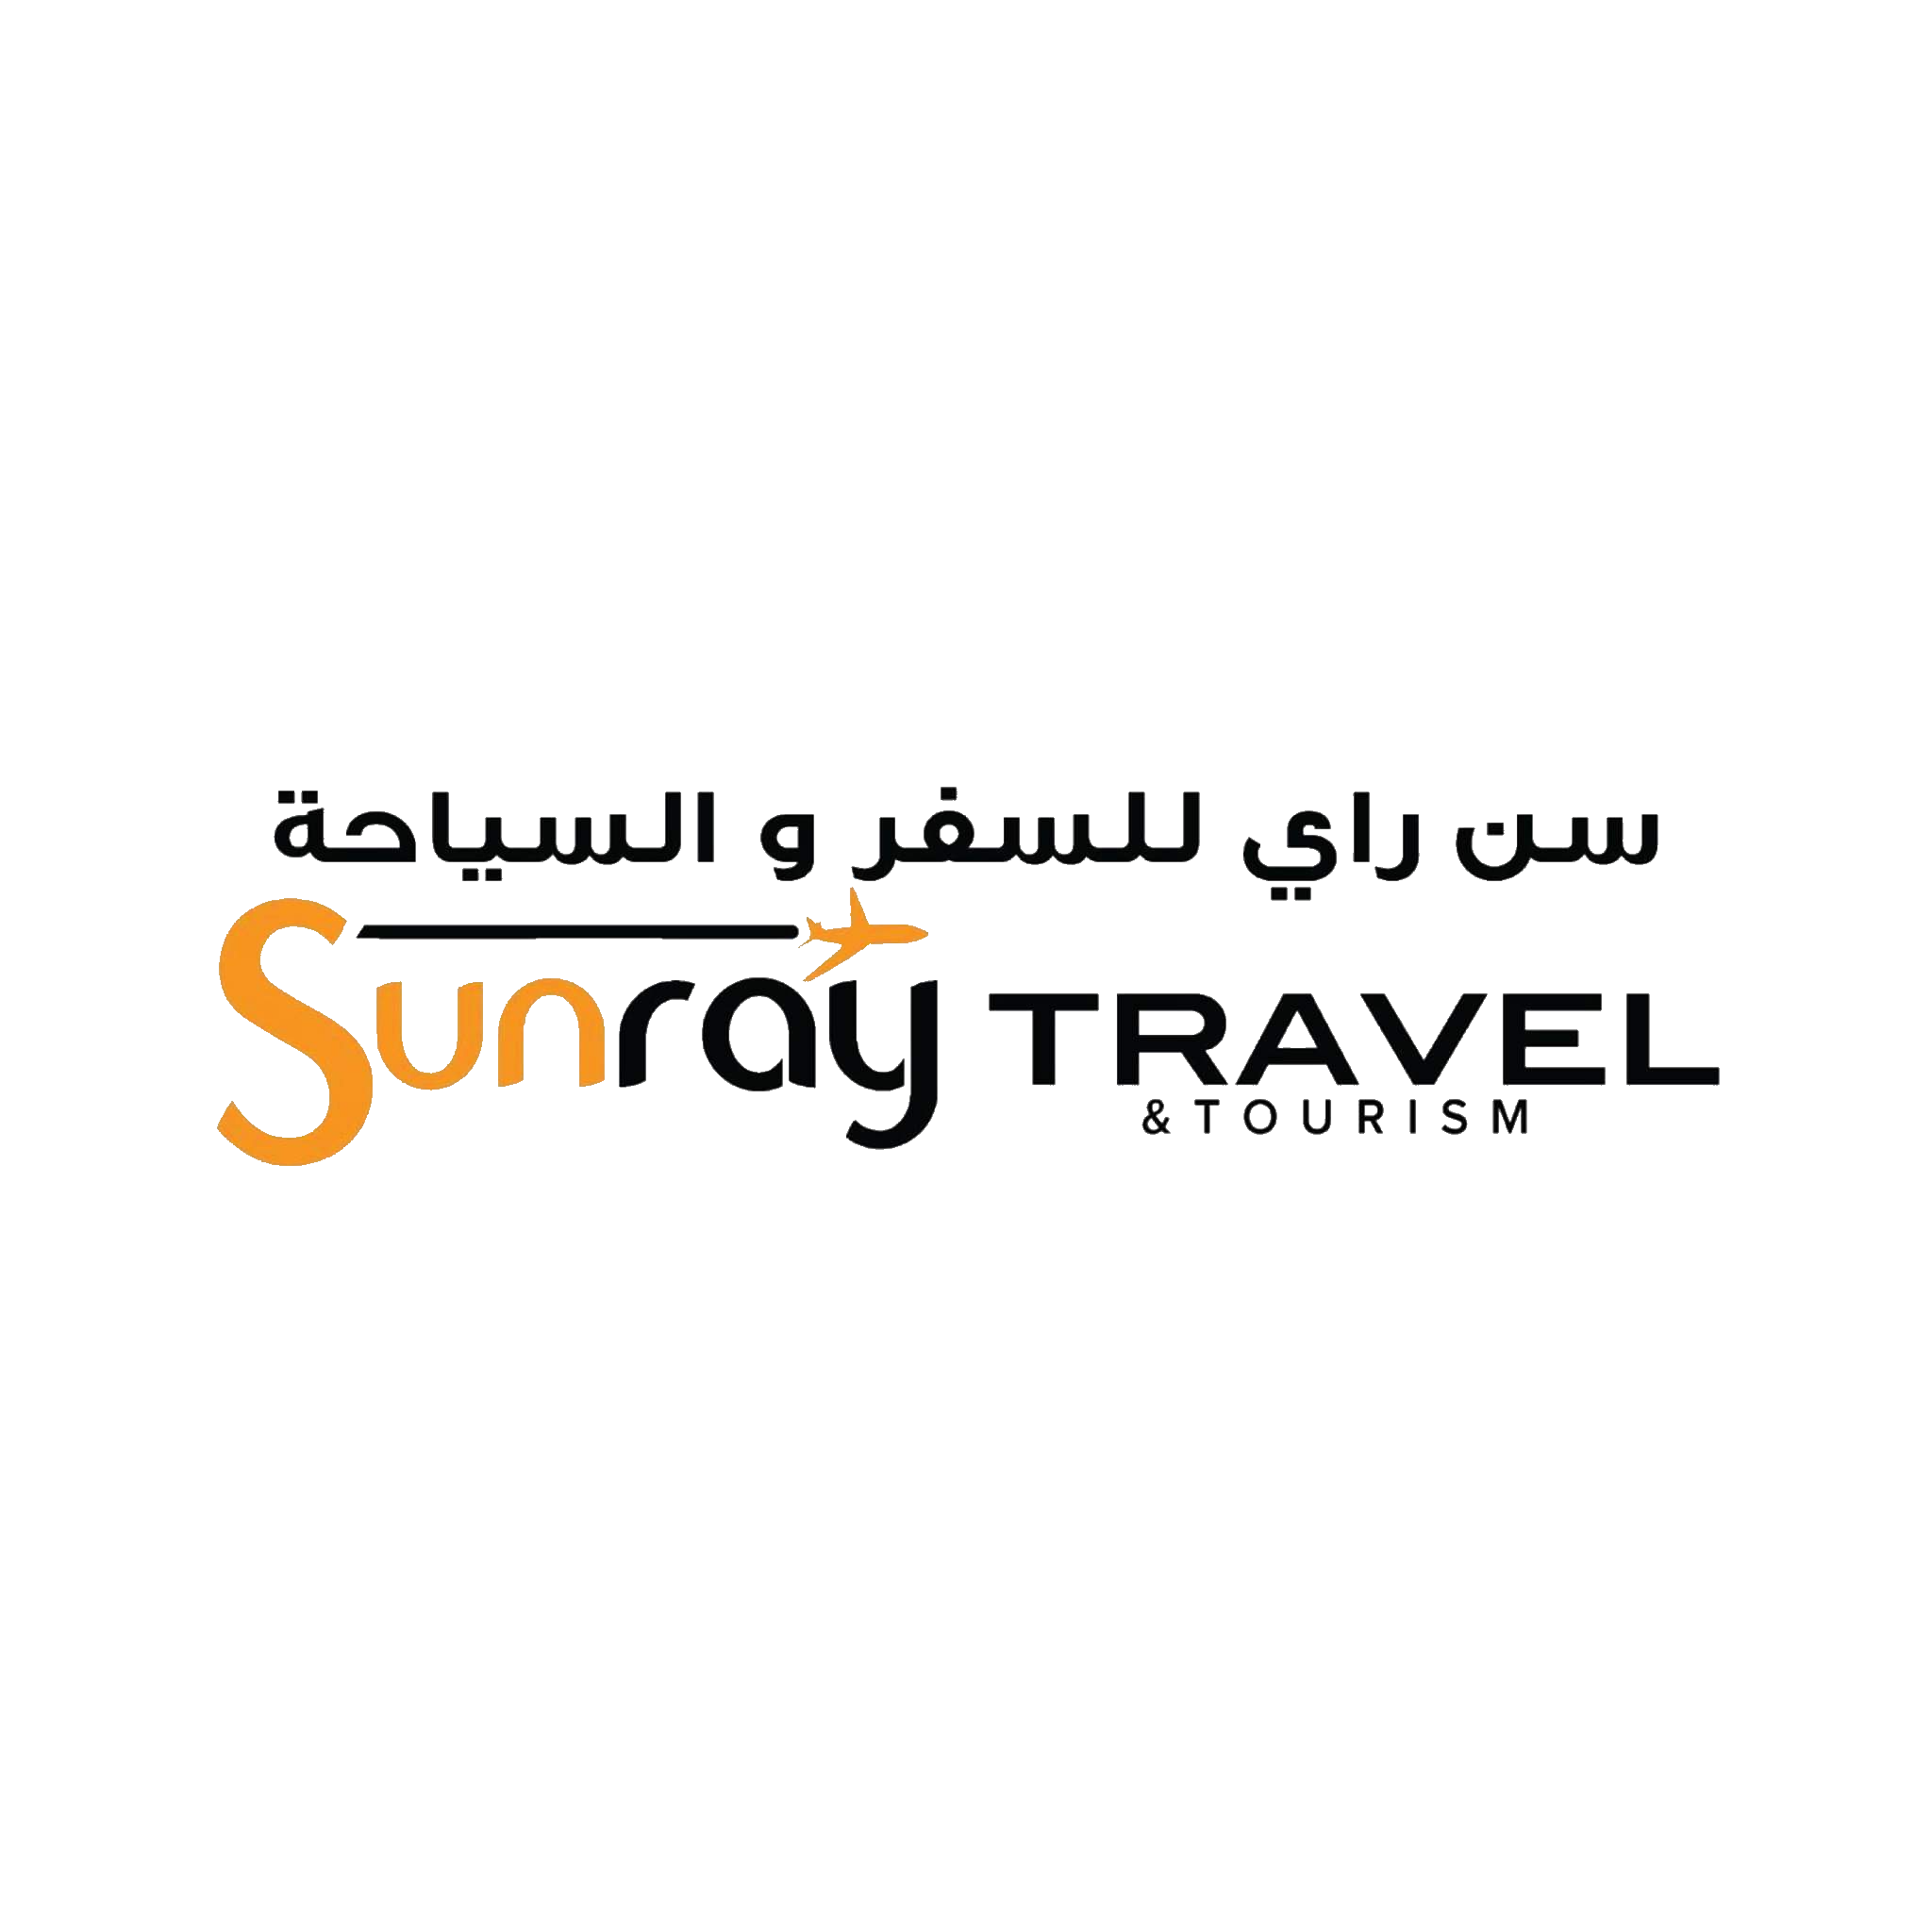 sunraytravelagency